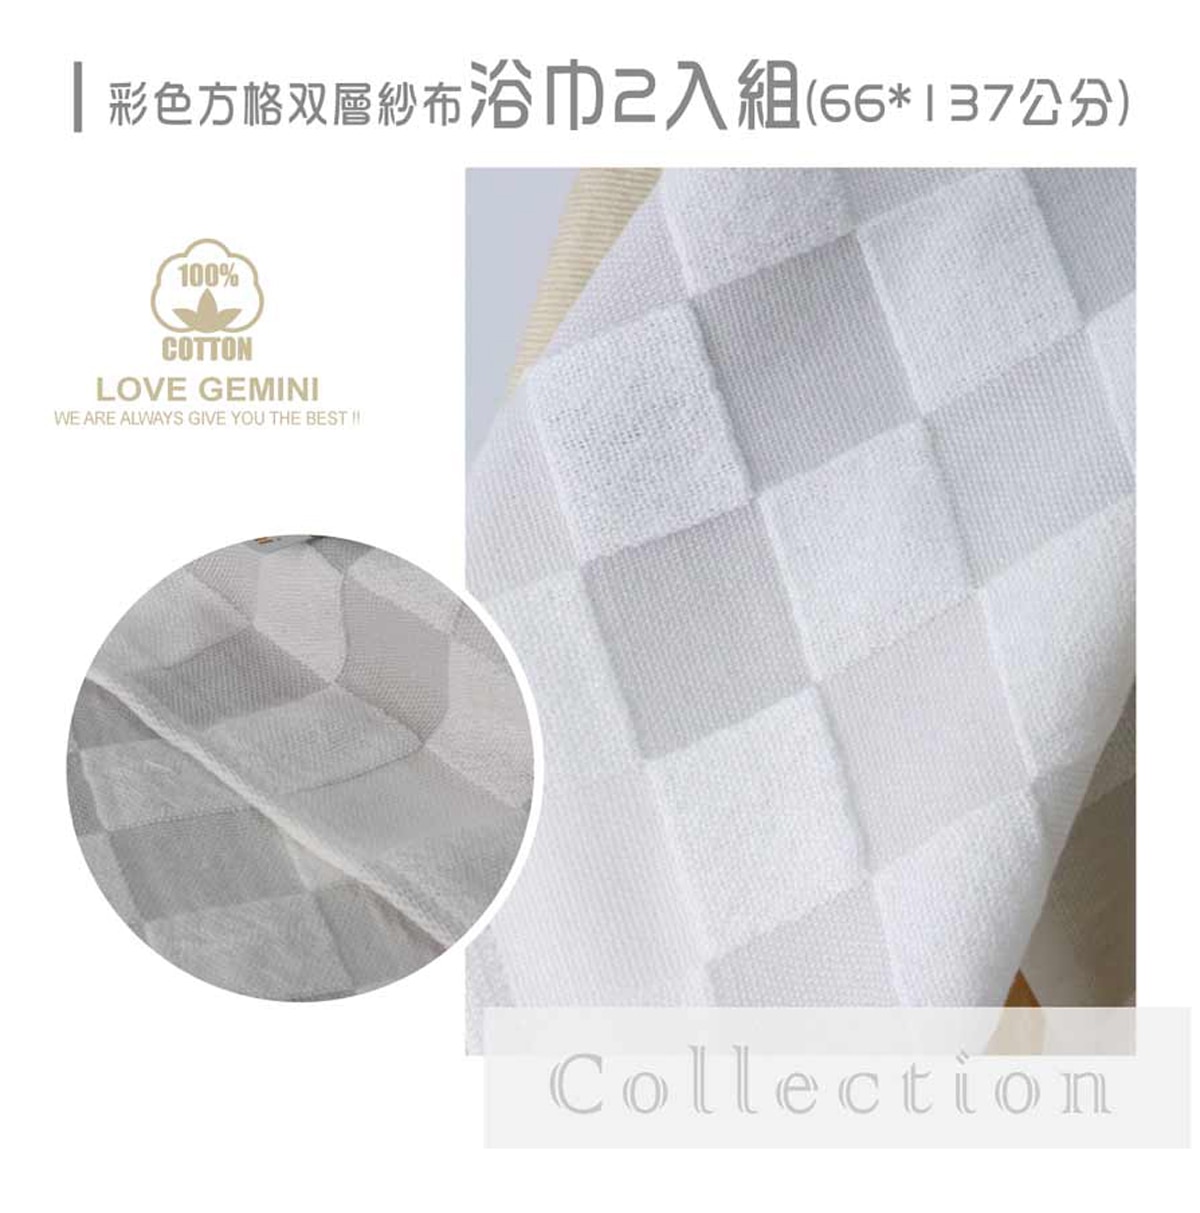 Gemini雙星毛巾 彩色方格雙層紗布浴巾2入組 65 x 137 公分 - 粉/黃 + 藍為100%純棉製造。